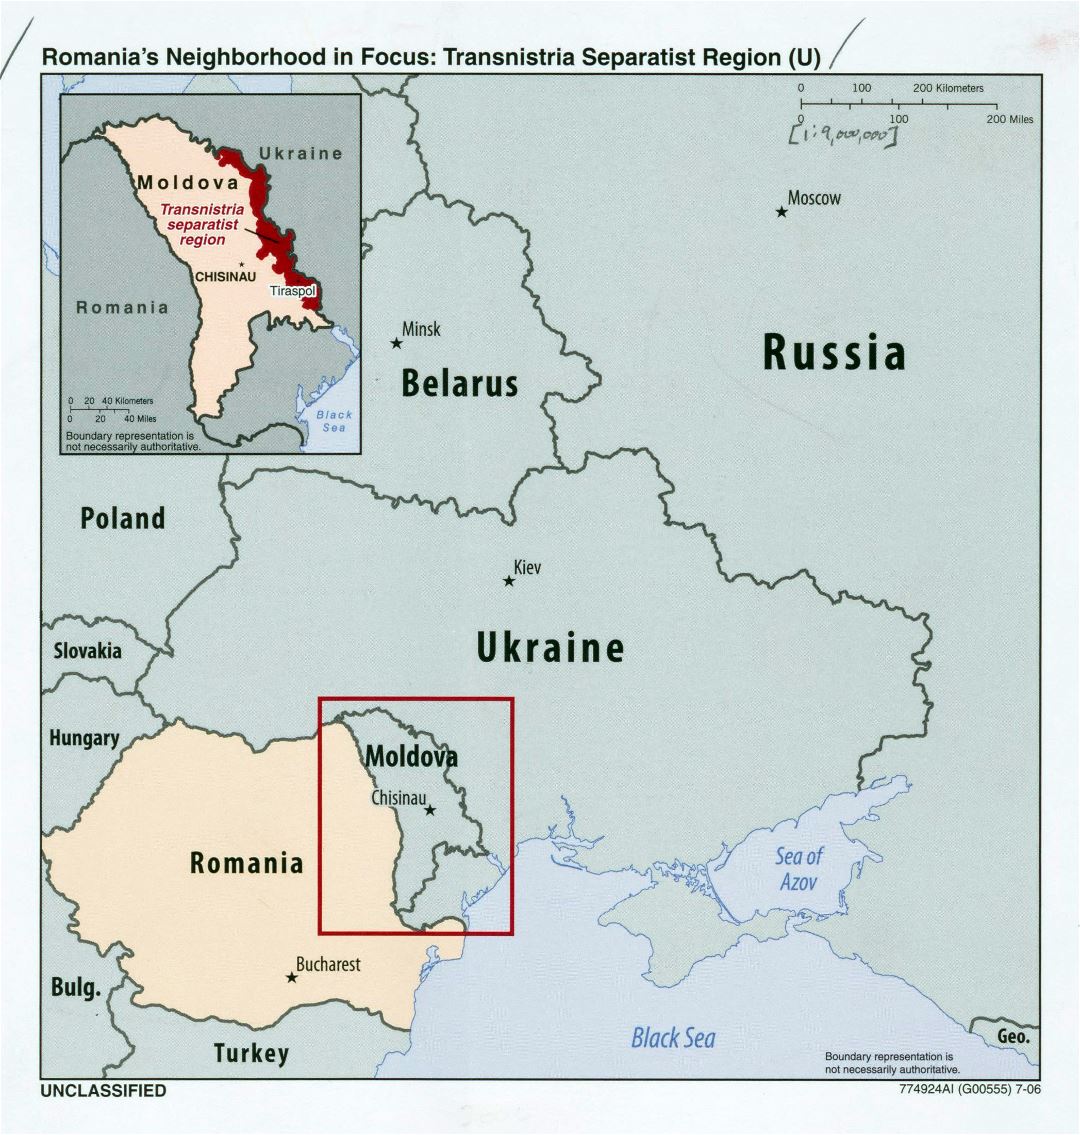 Большая детальная карта района Румынии в центре - Приднестровский сепаратистский регион - 2006